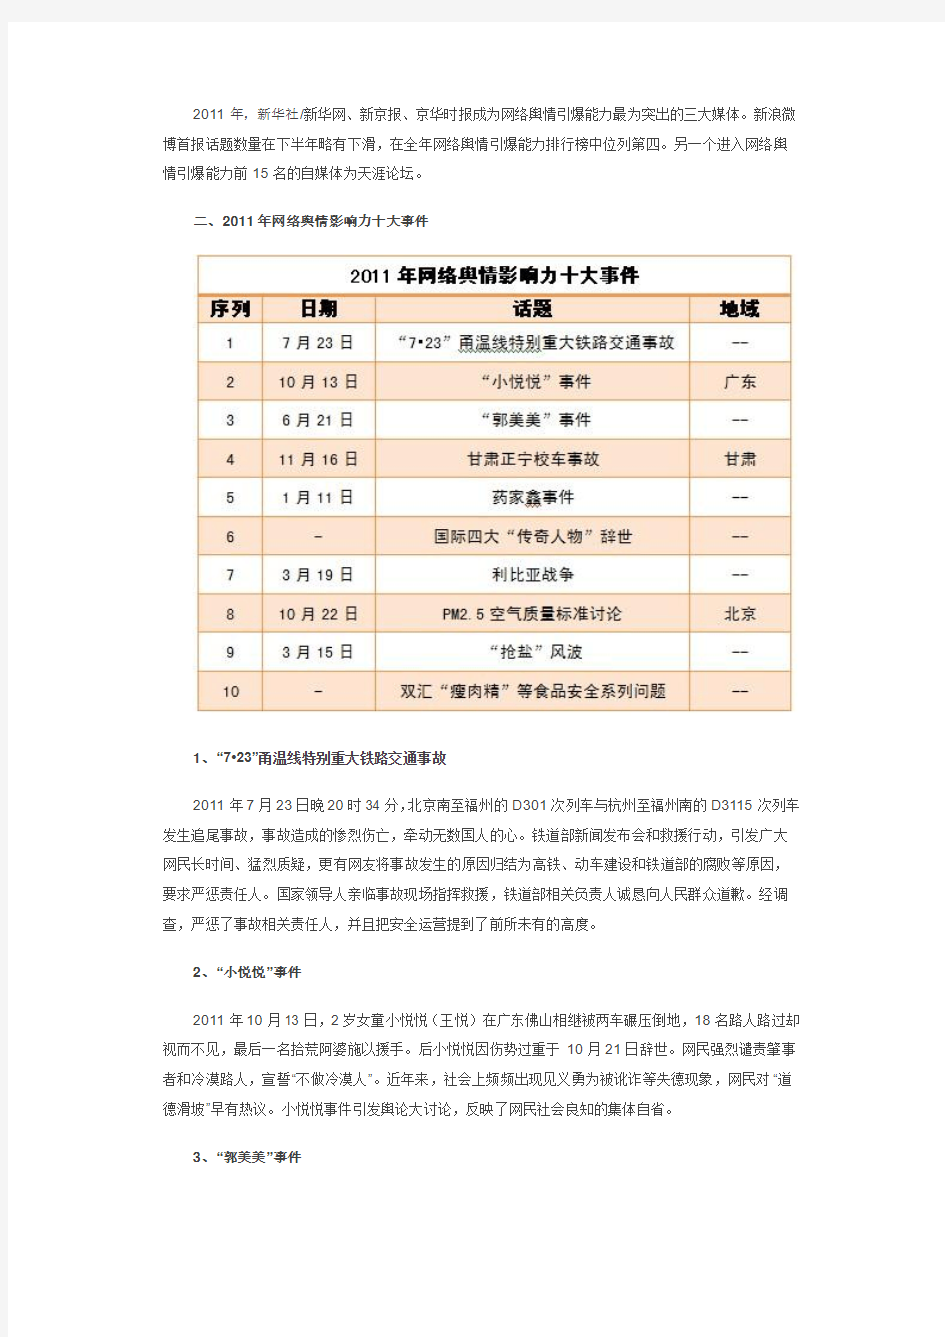 2011年中国网络舆情指数年度报告